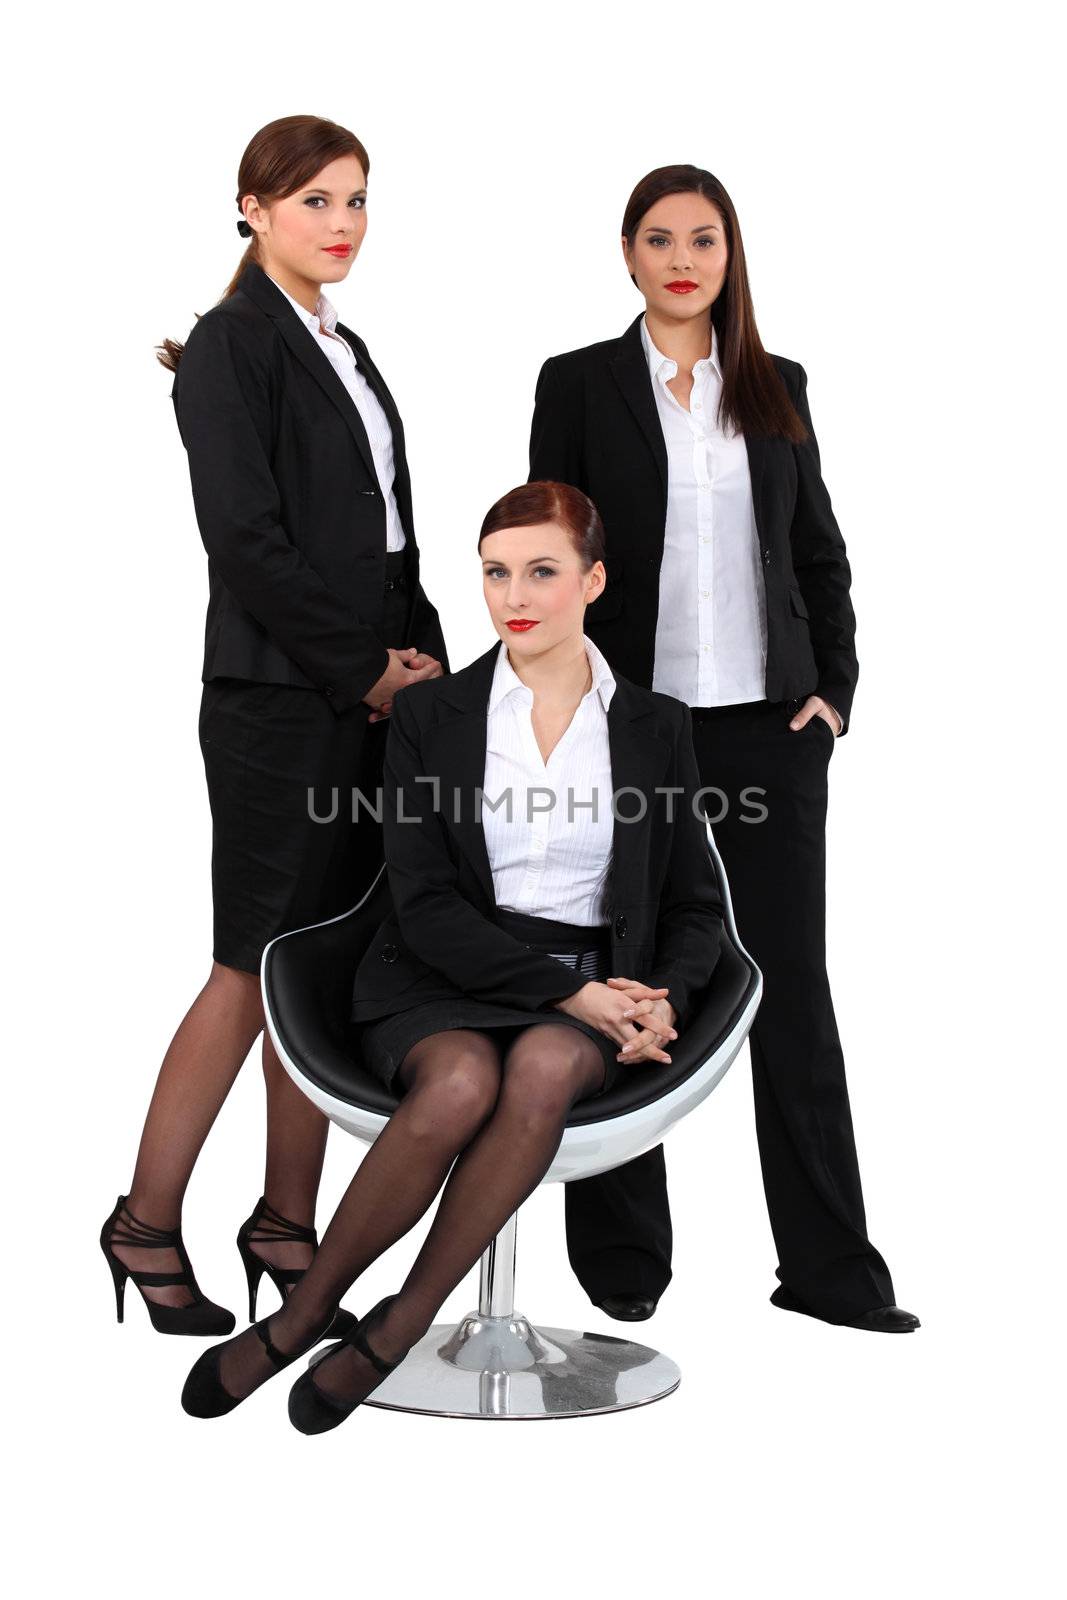 three elegant women in suits